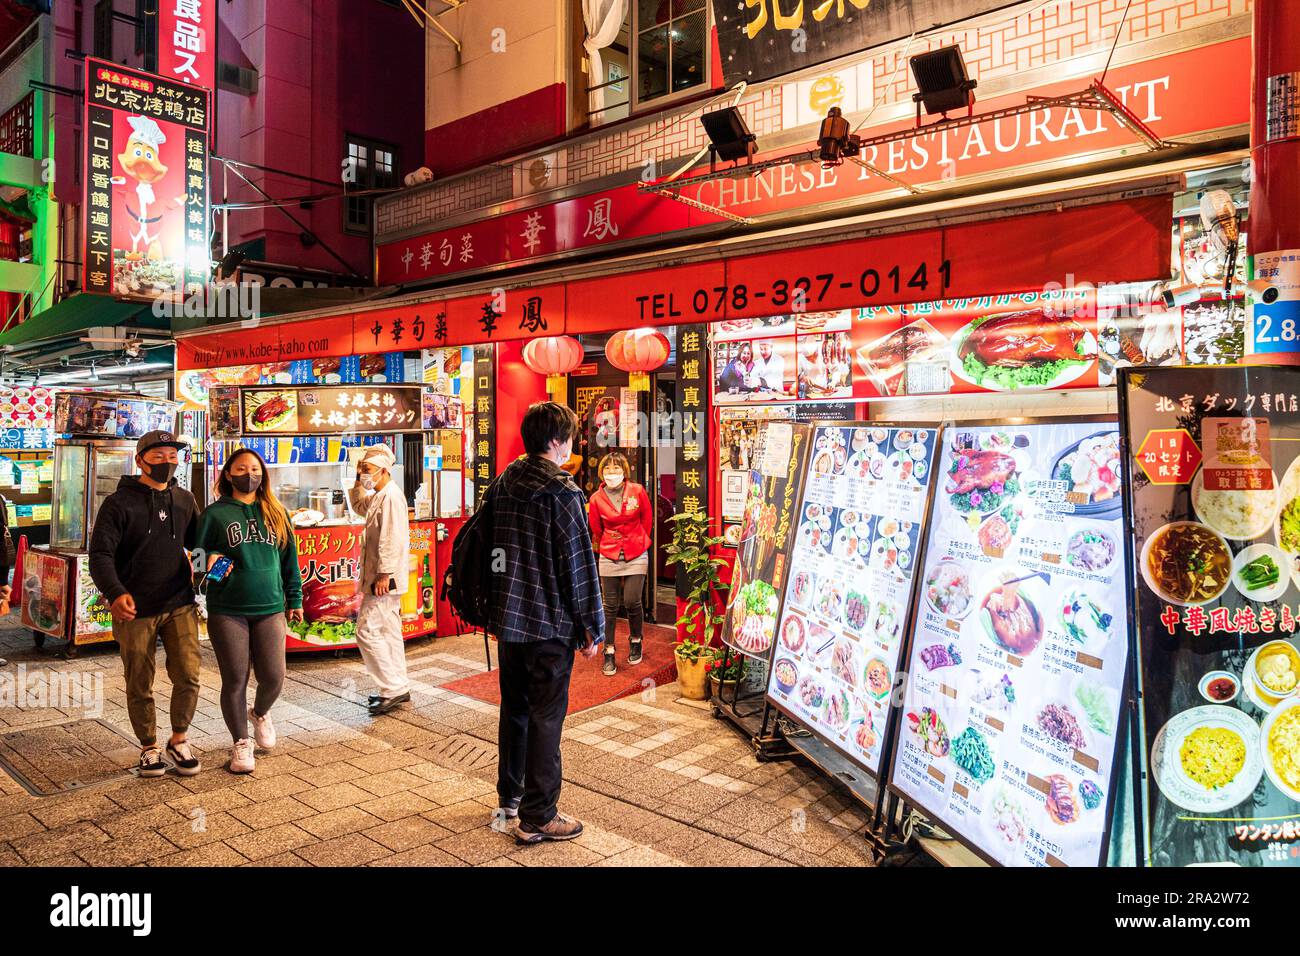 Extérieur d'un restaurant chinois à Chinatown, Kobe, le soir. Accueillir à l'extérieur temping jeune n pour venir à l'intérieur comme il regarde le tableau de menu. Banque D'Images